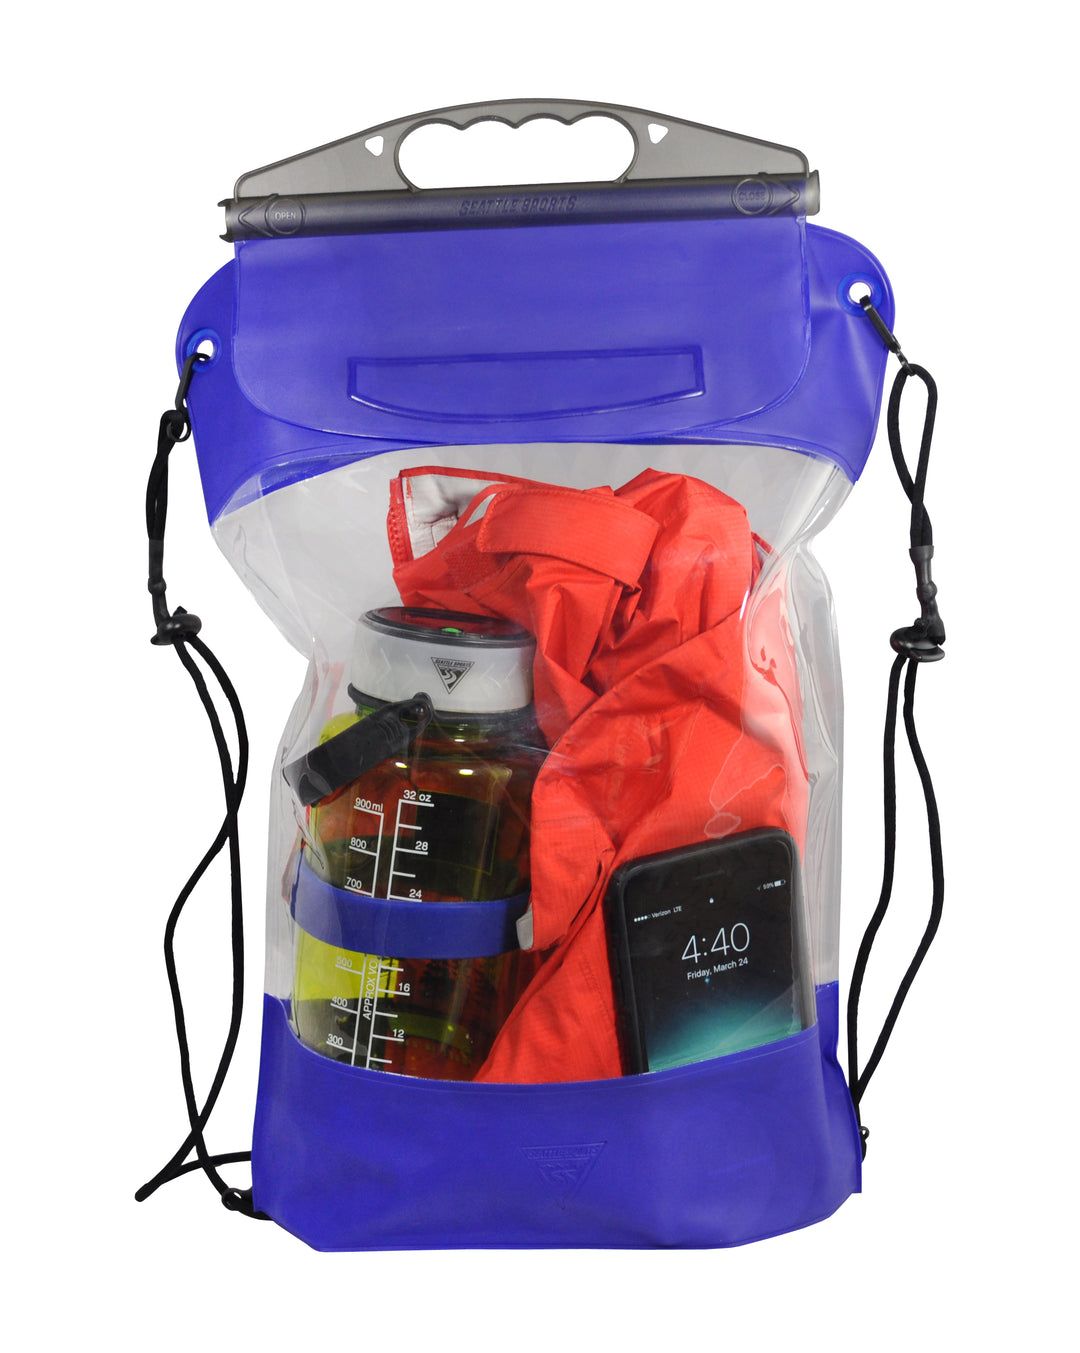 gopack waterproof backpack